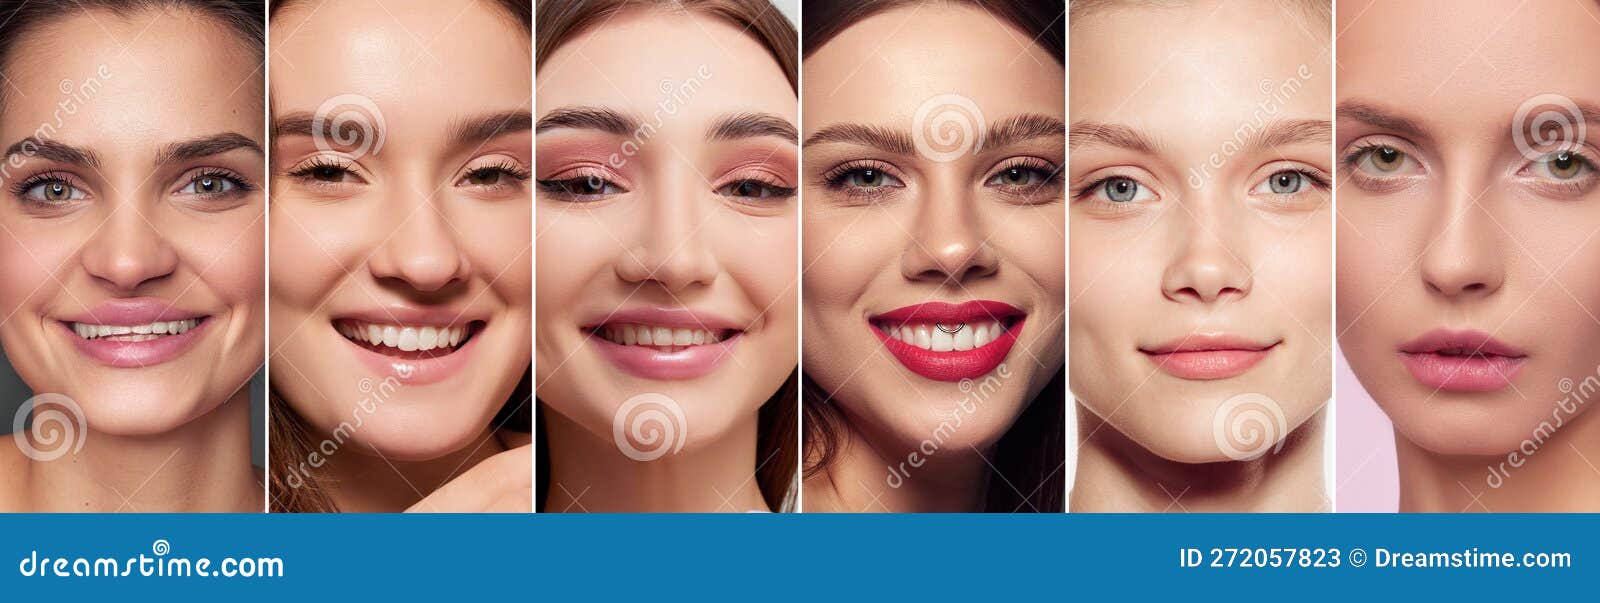 Retrato de rosto fechado de duas jovens mulheres bonitas mulheres bonitas  com maquiagem de beleza e cosméticos conceito de cosméticos e cosmetologia